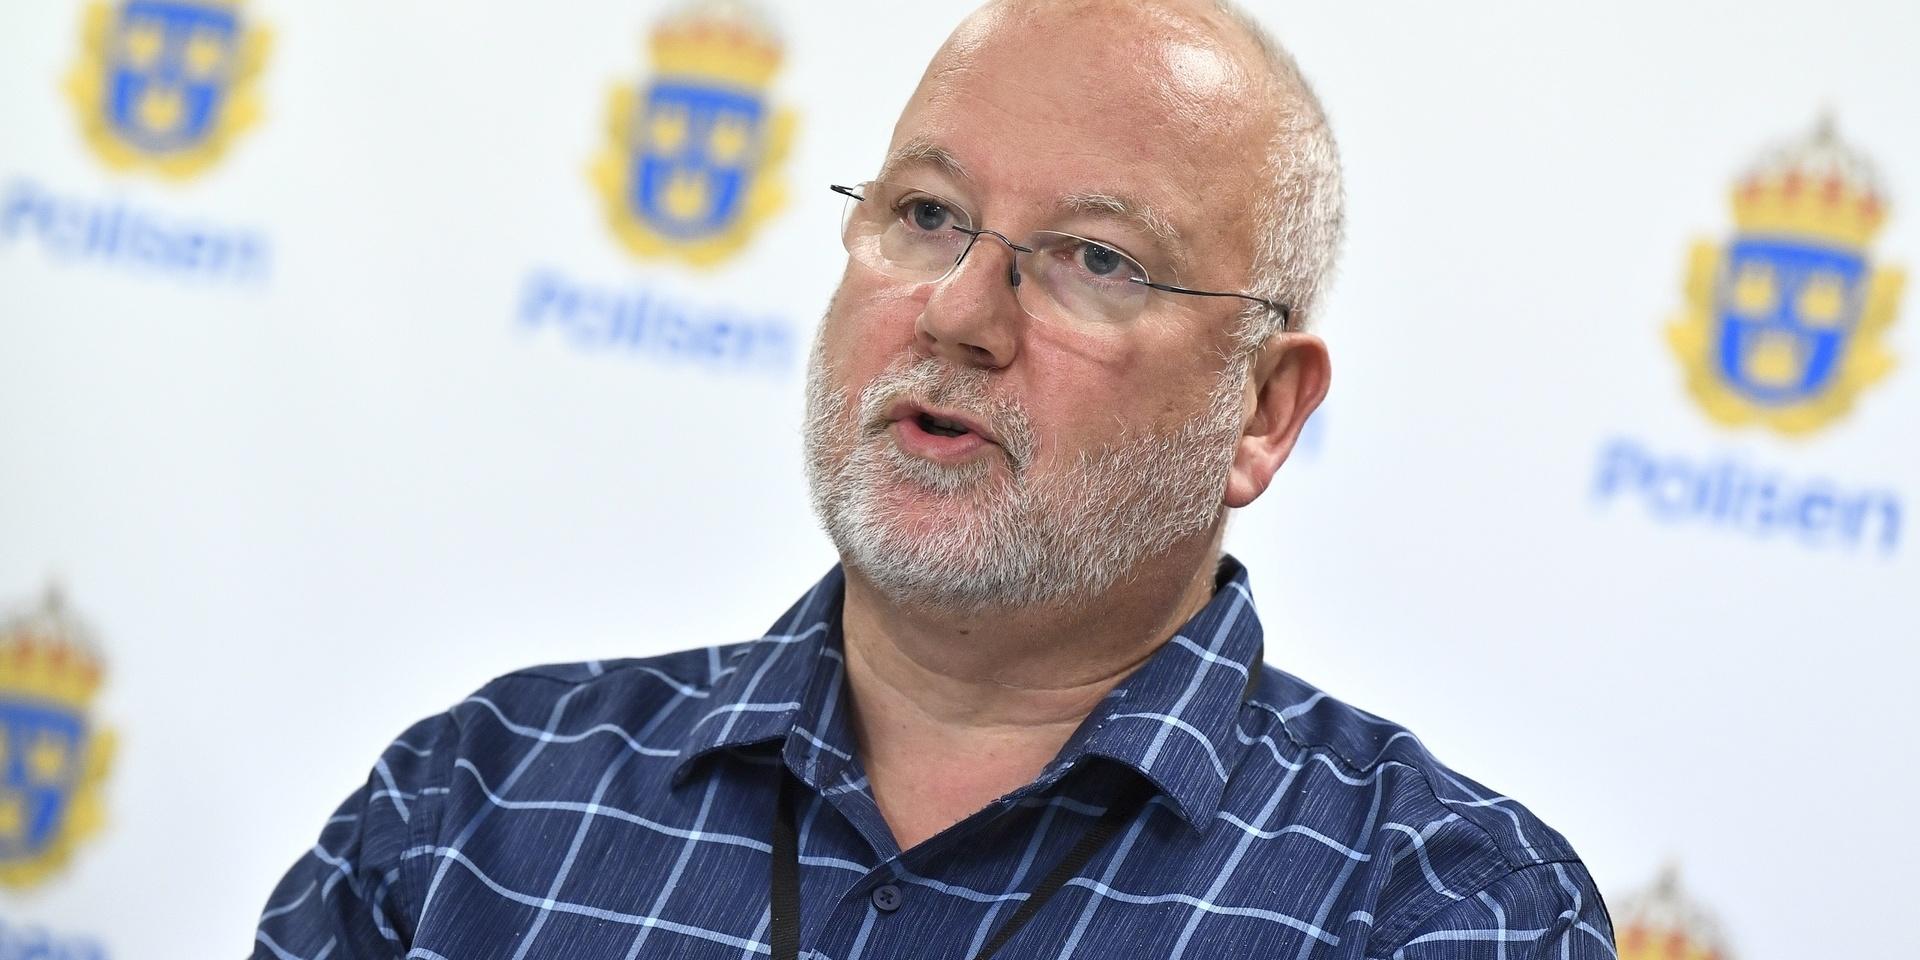 Gängexperten och kriminalkommissarien Gunnar Appelgren. Arkivbild.